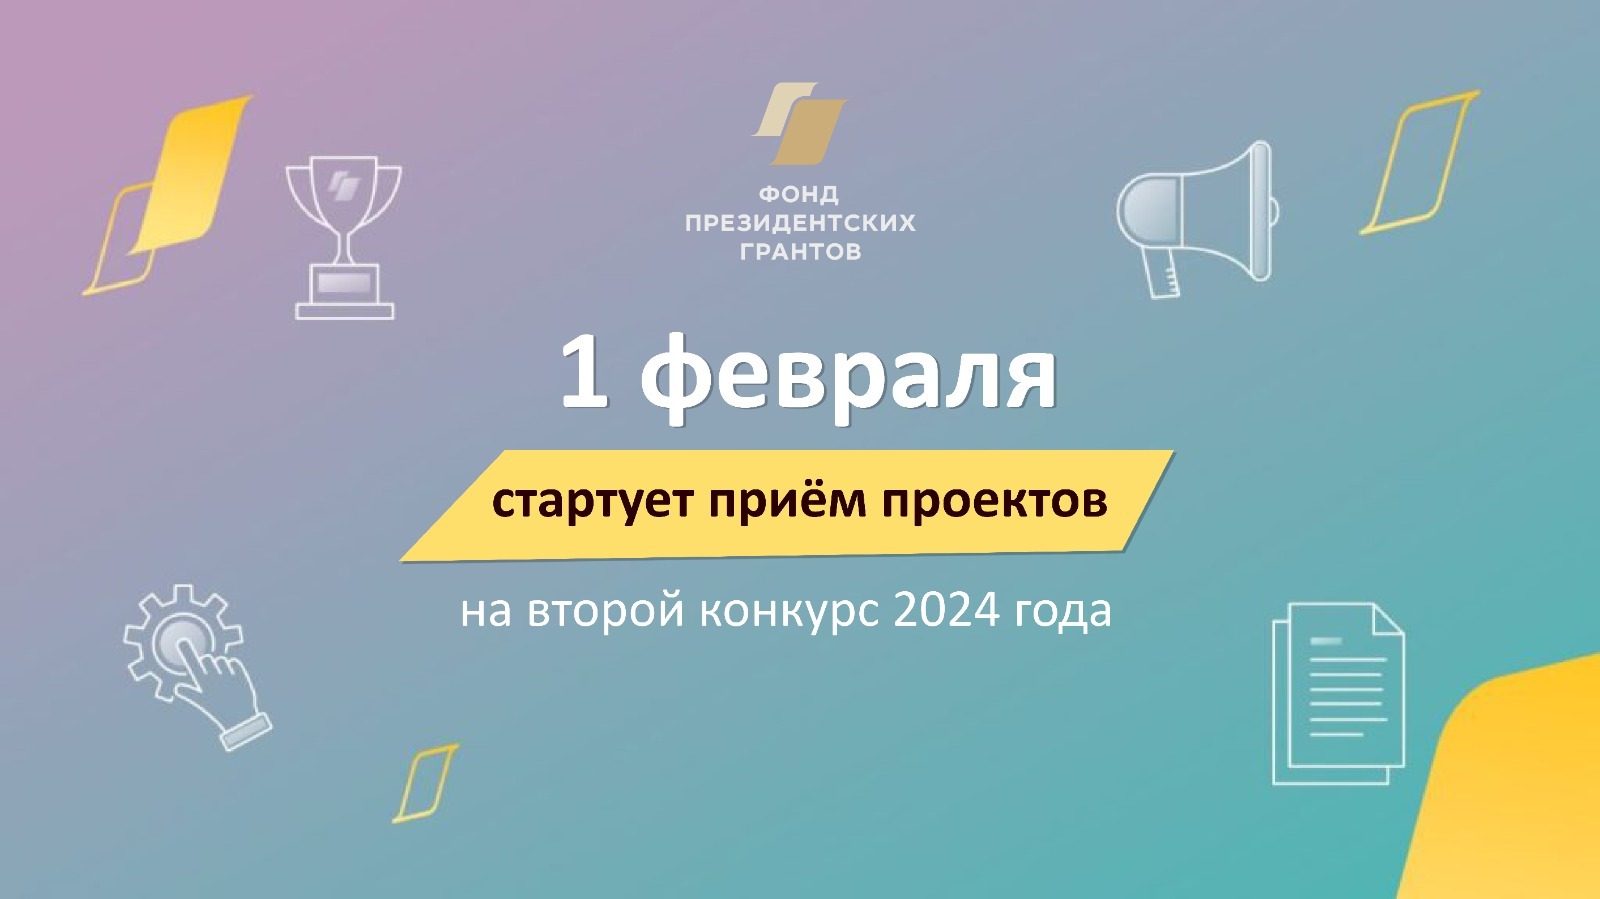 НКО Башкирии приглашают участвовать во втором конкурсе Фонда президентских грантов 2024 года